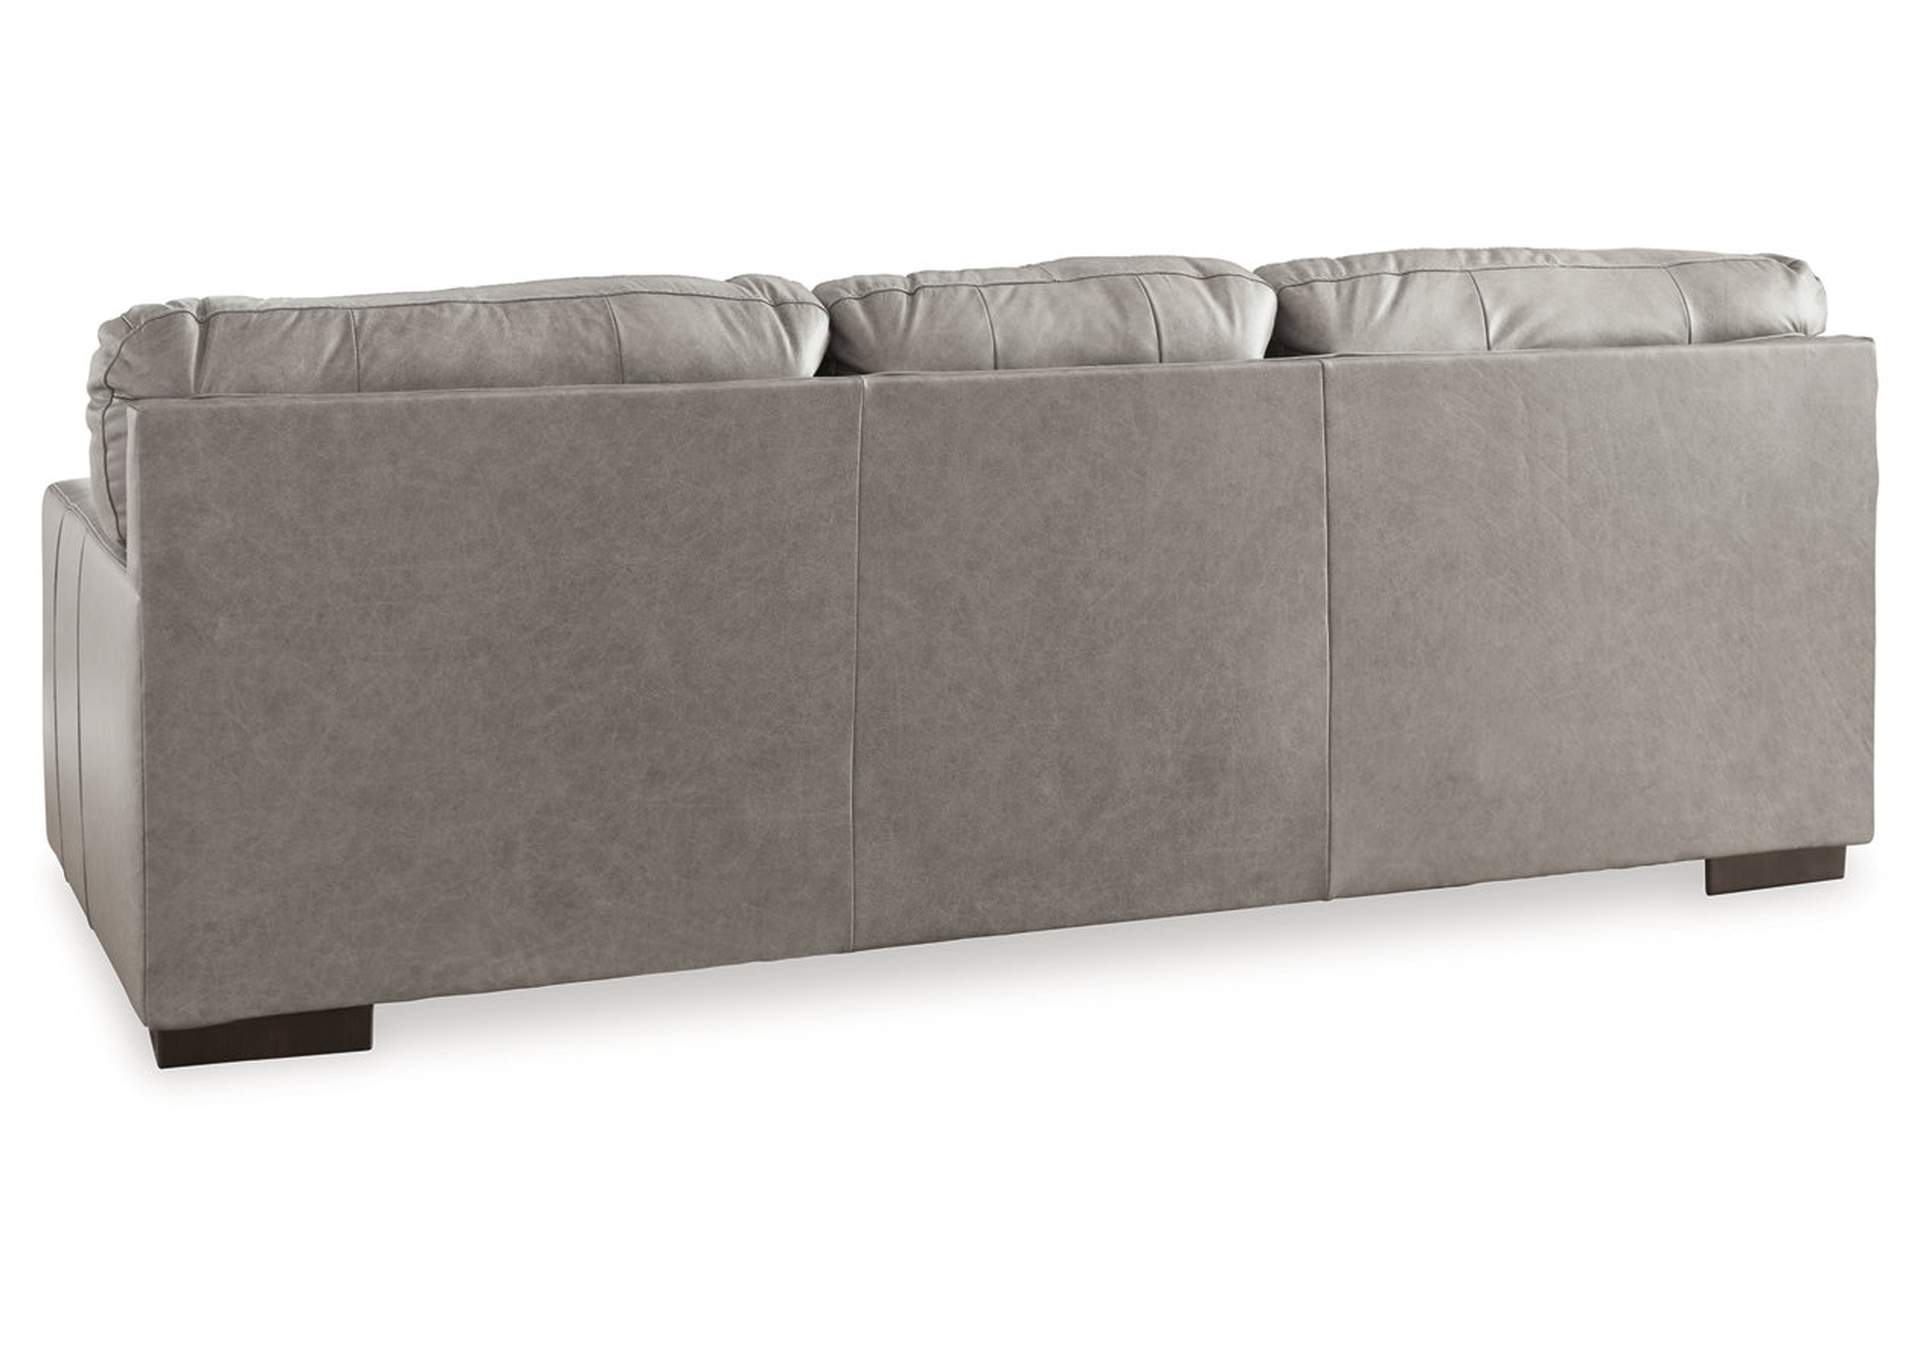 Lombardia Sofa,Millennium